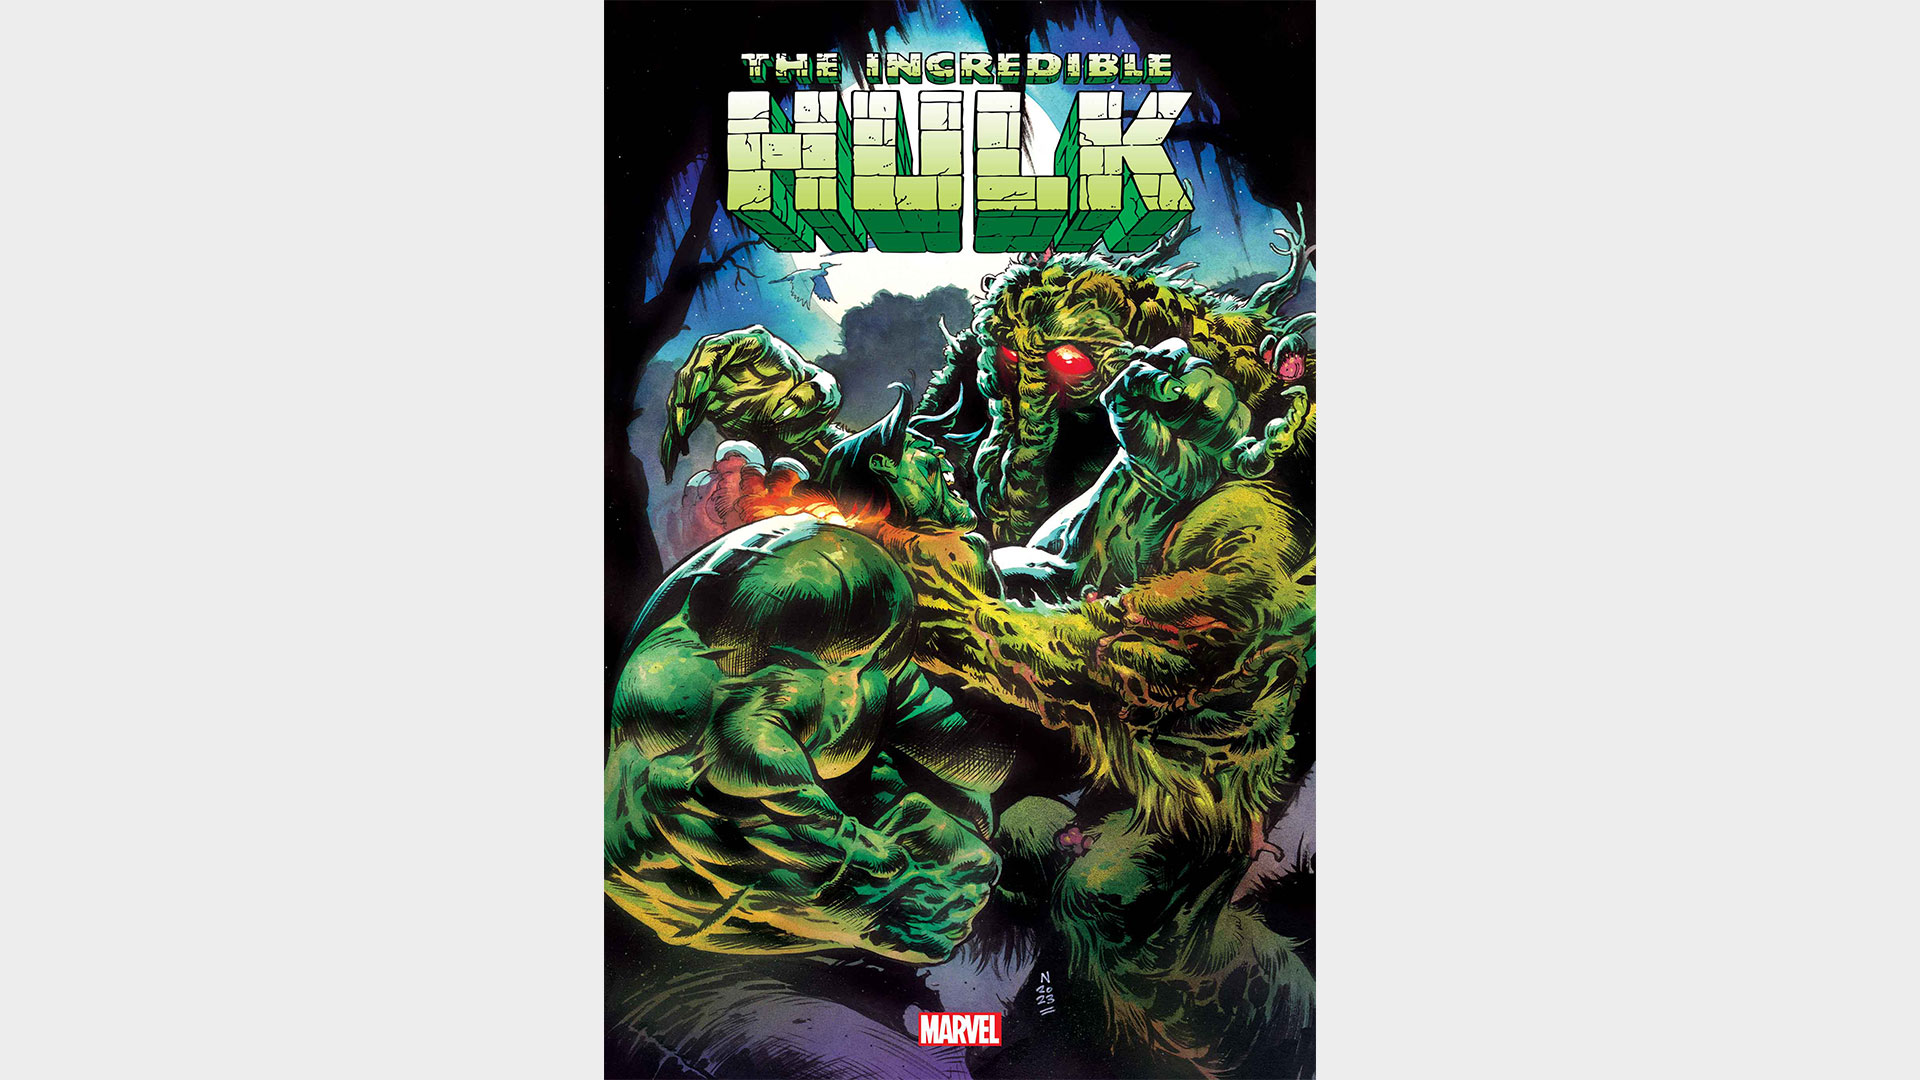 Couverture de l'Incroyable Hulk #4